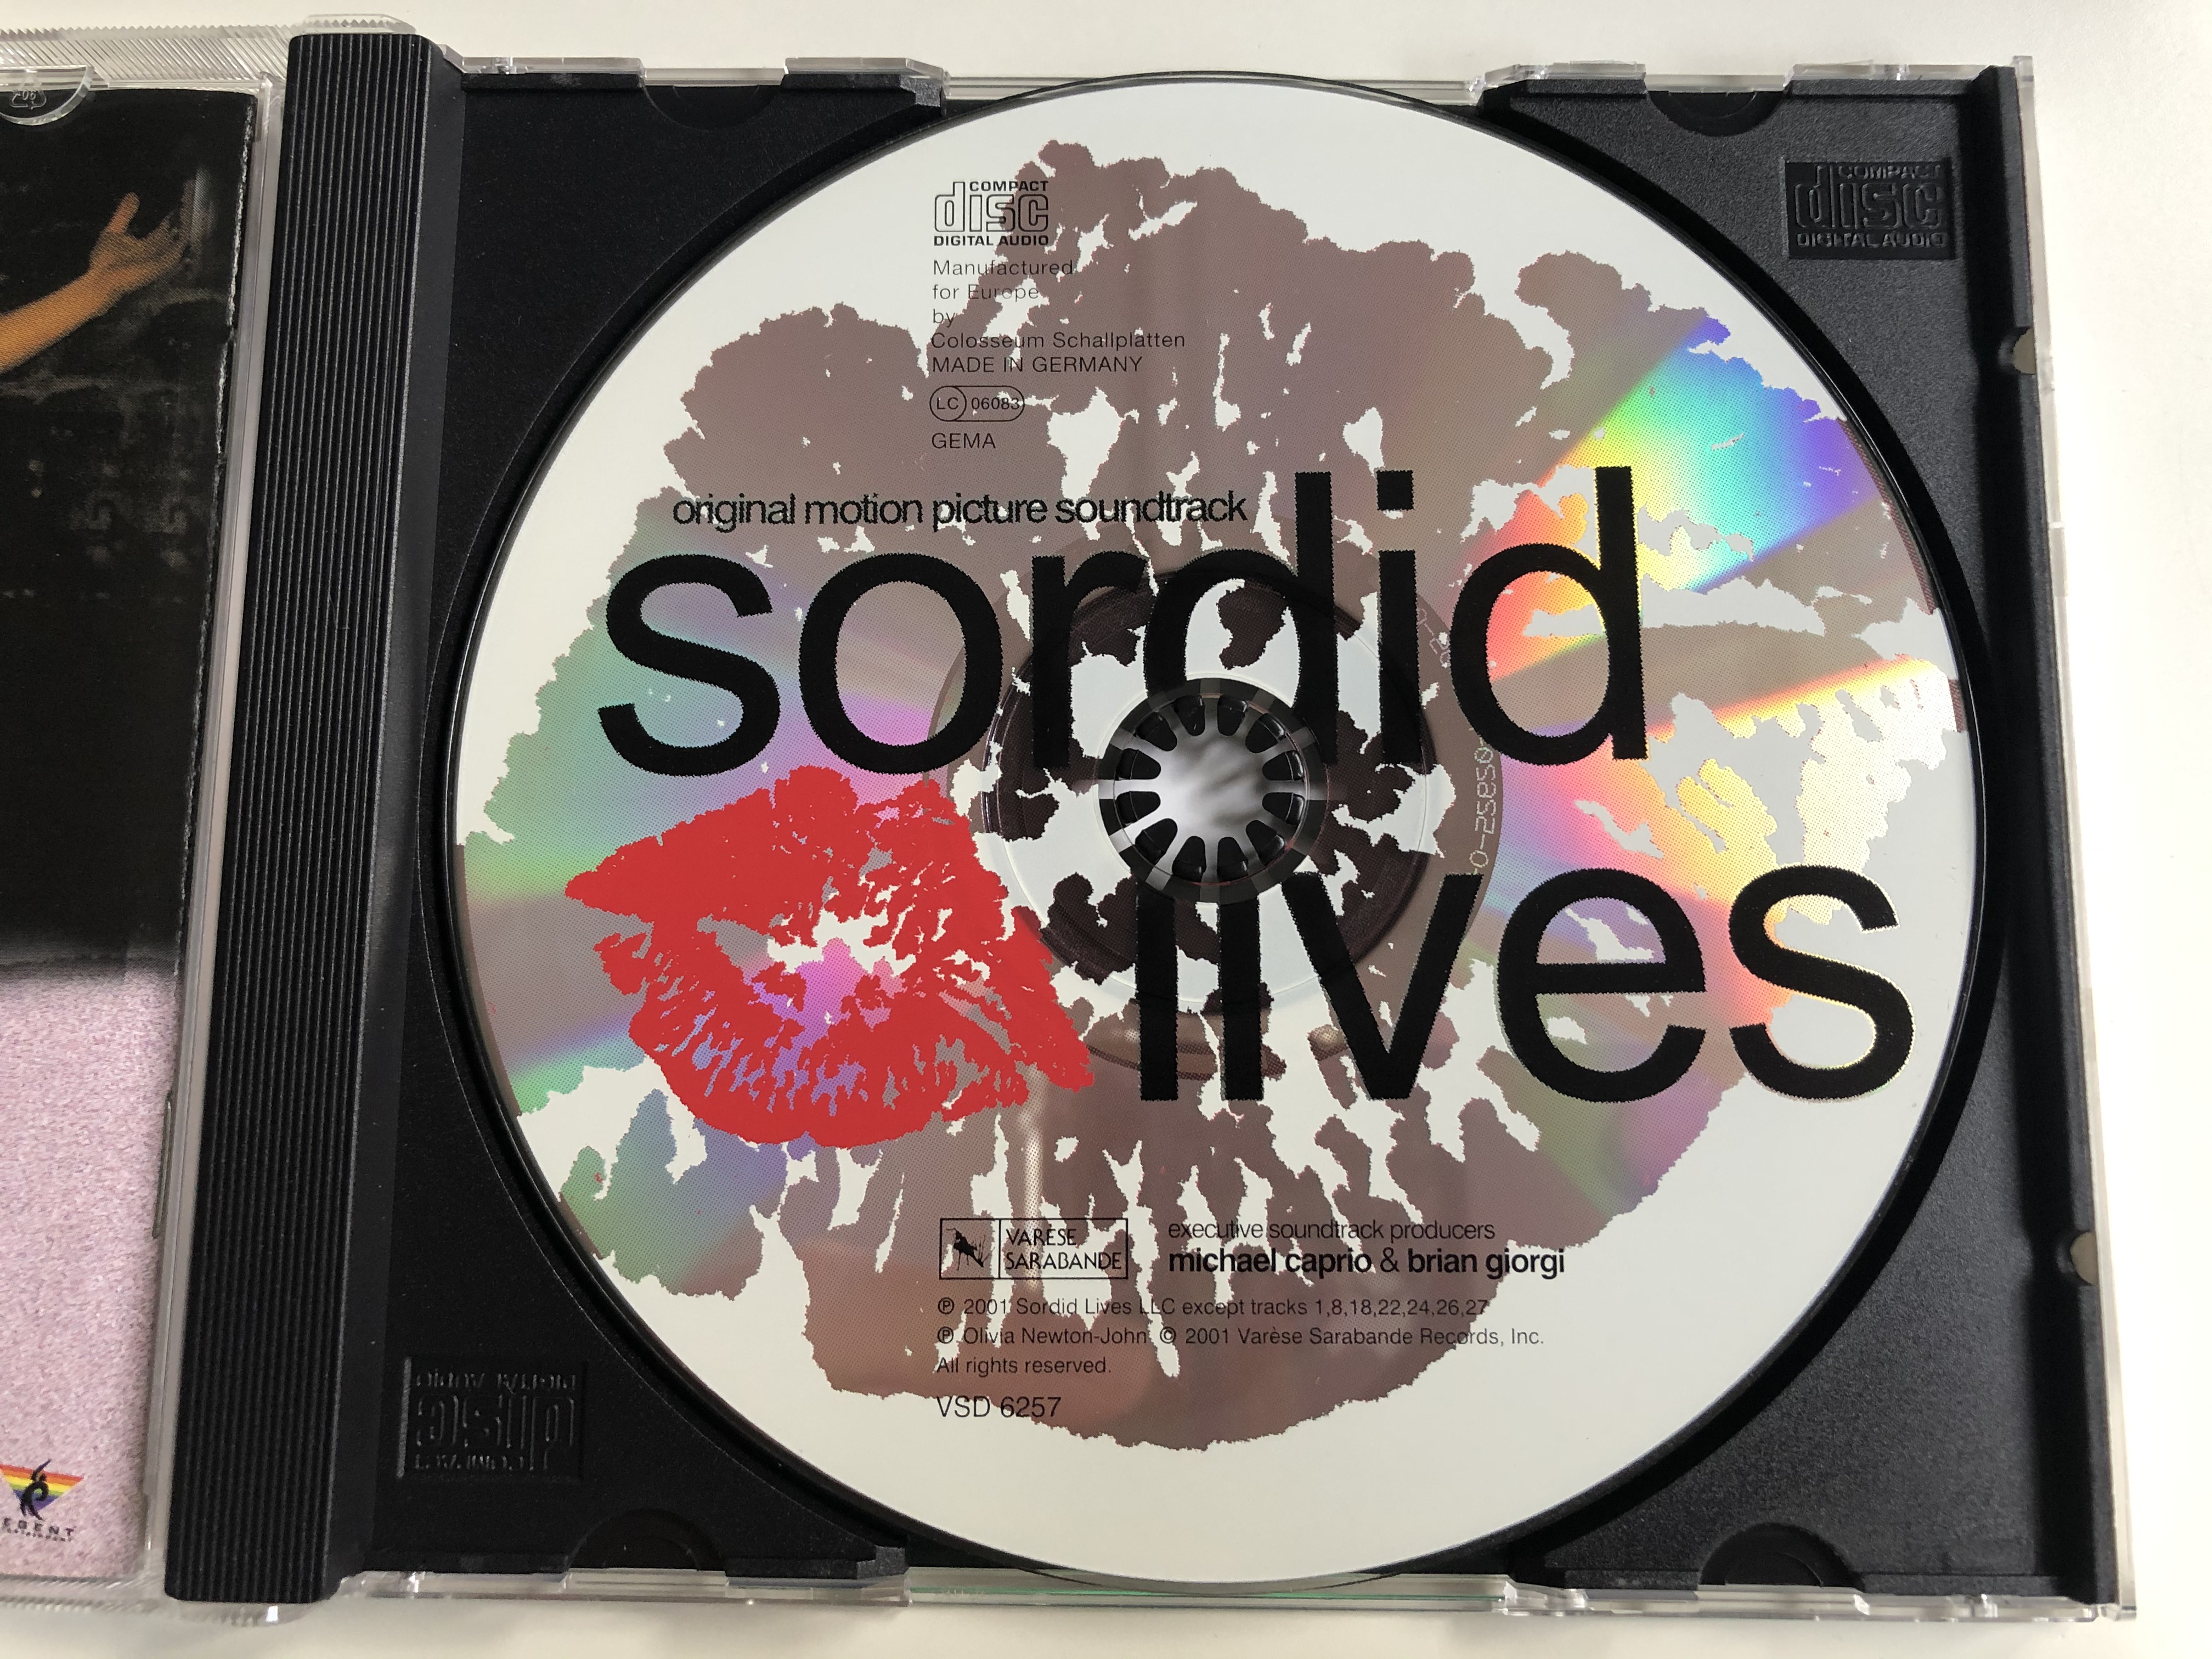 sordid-lives-original-motion-picture-soundtrack-var-se-sarabande-audio-cd-2001-vsd-6257-5-.jpg